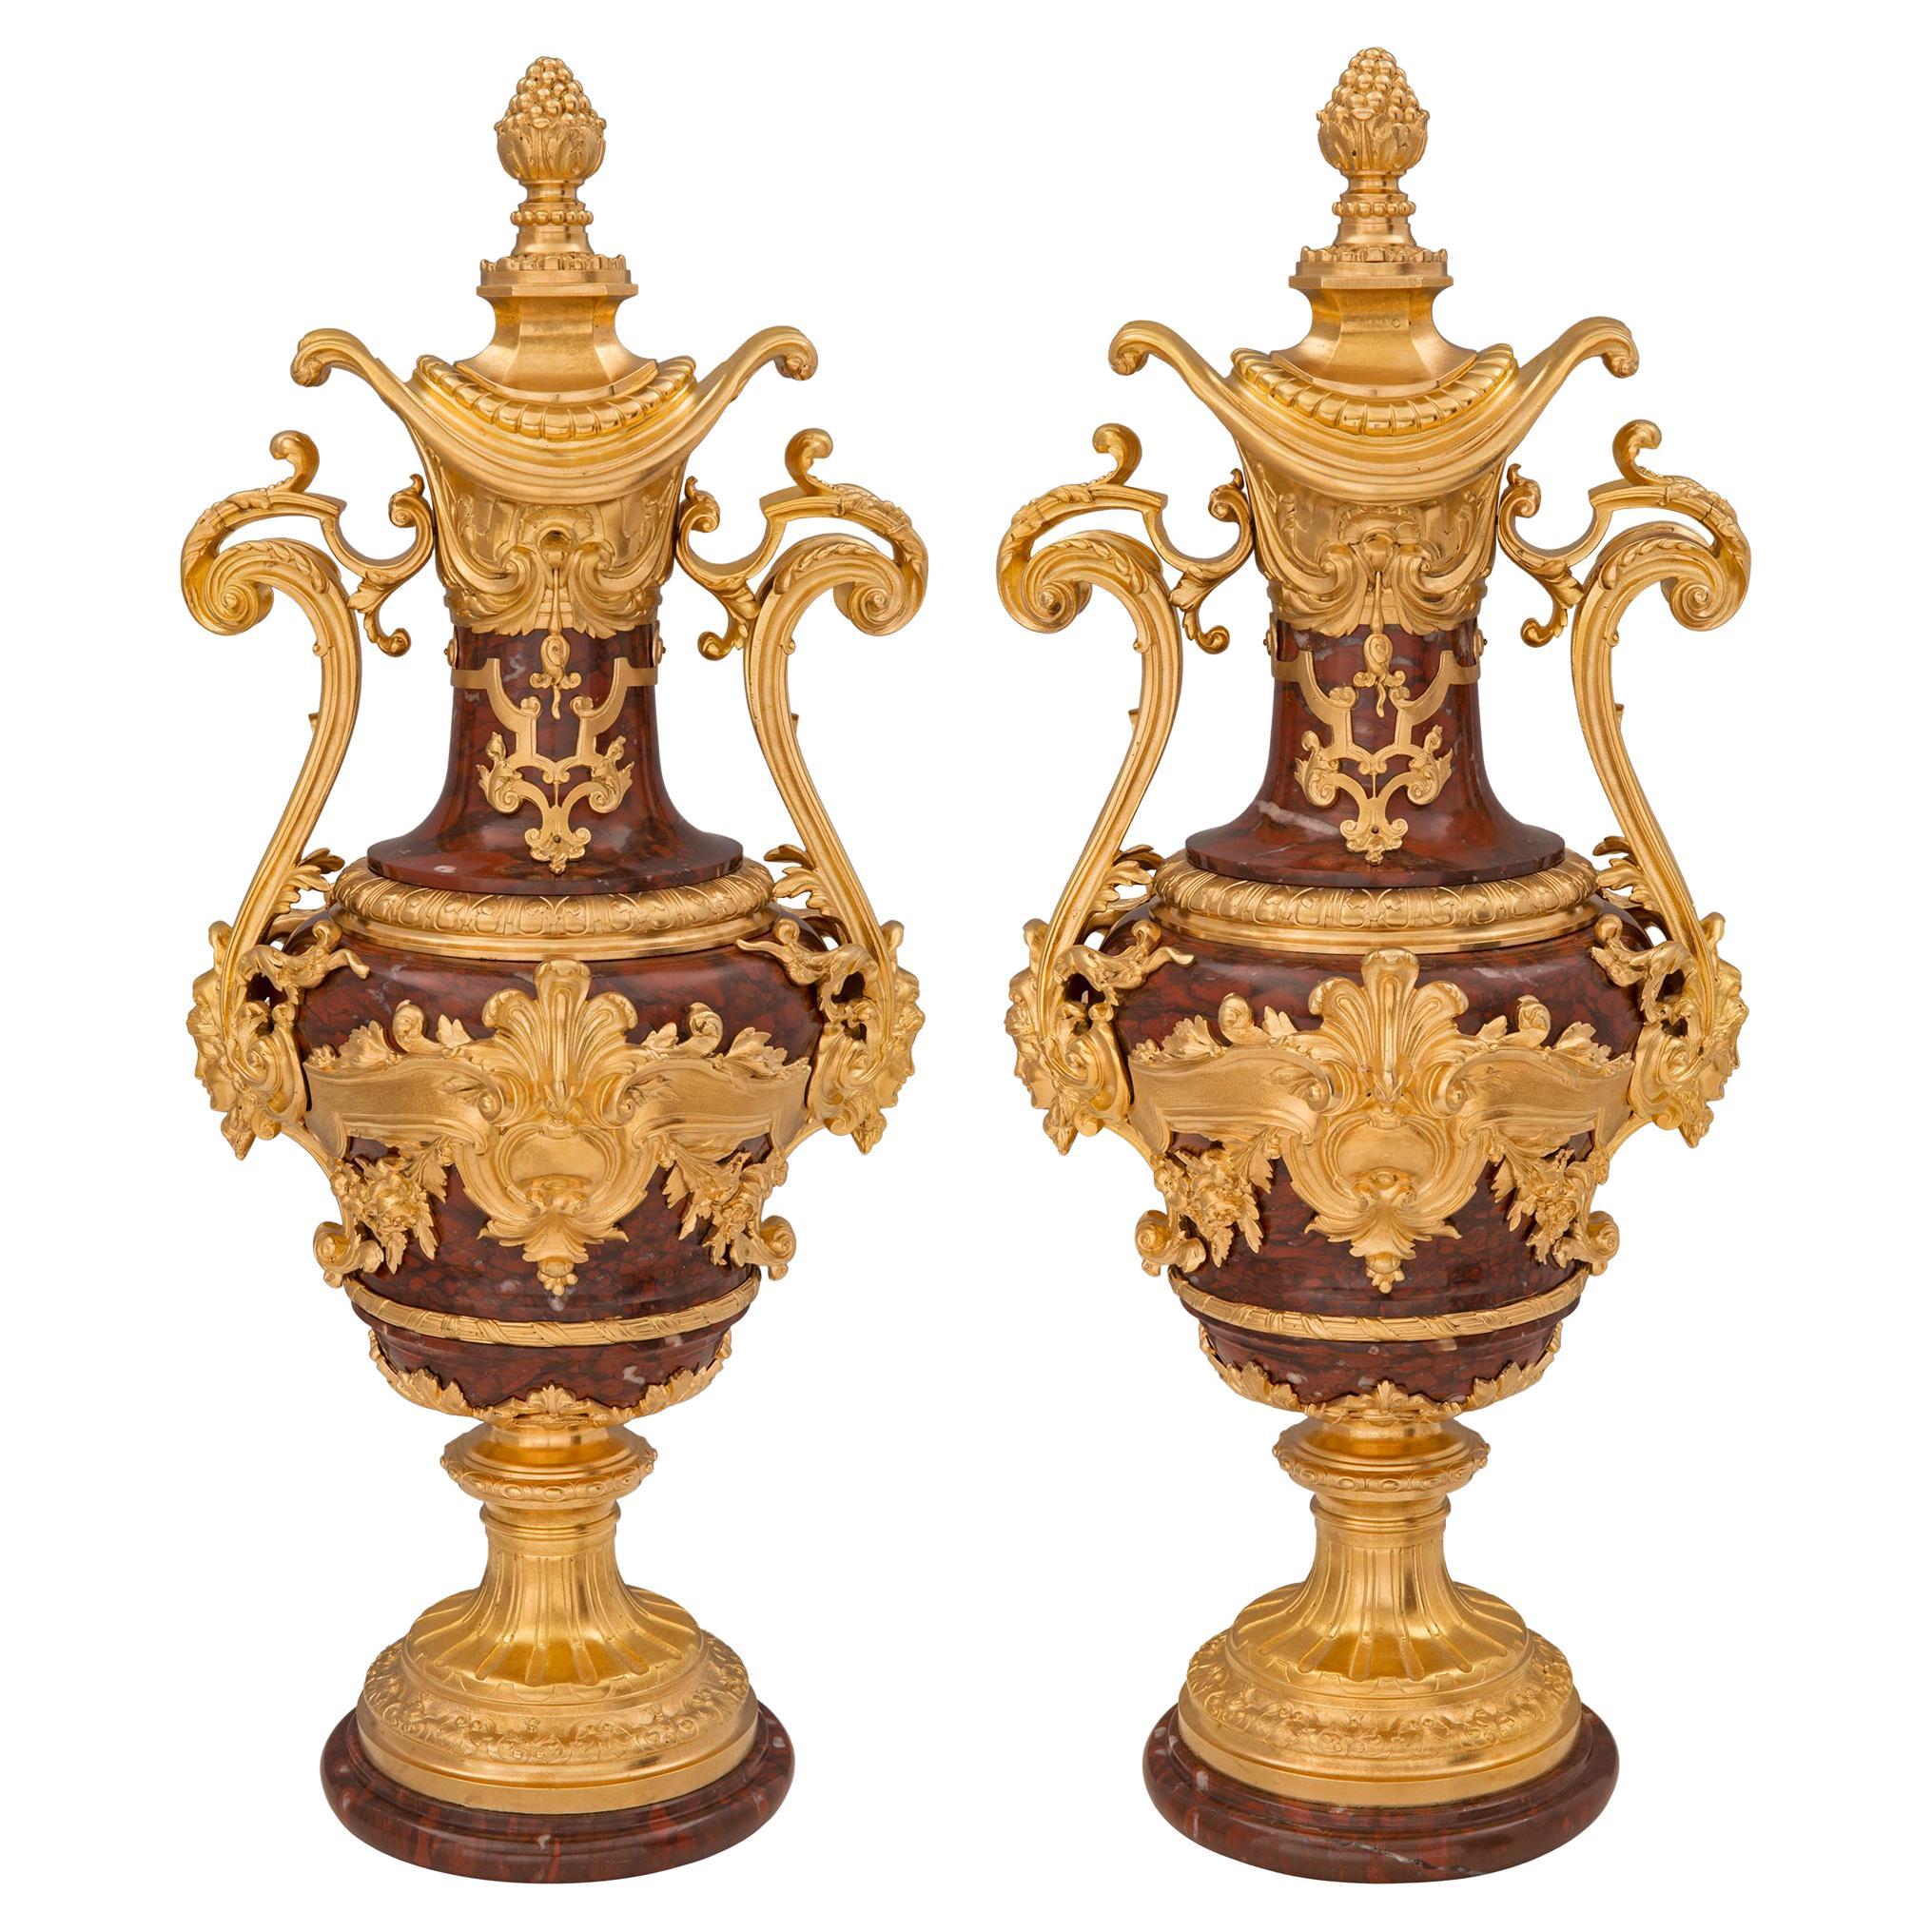 Paire d'urnes françaises d'époque Louis XVI du XIXe siècle de style Belle Époque